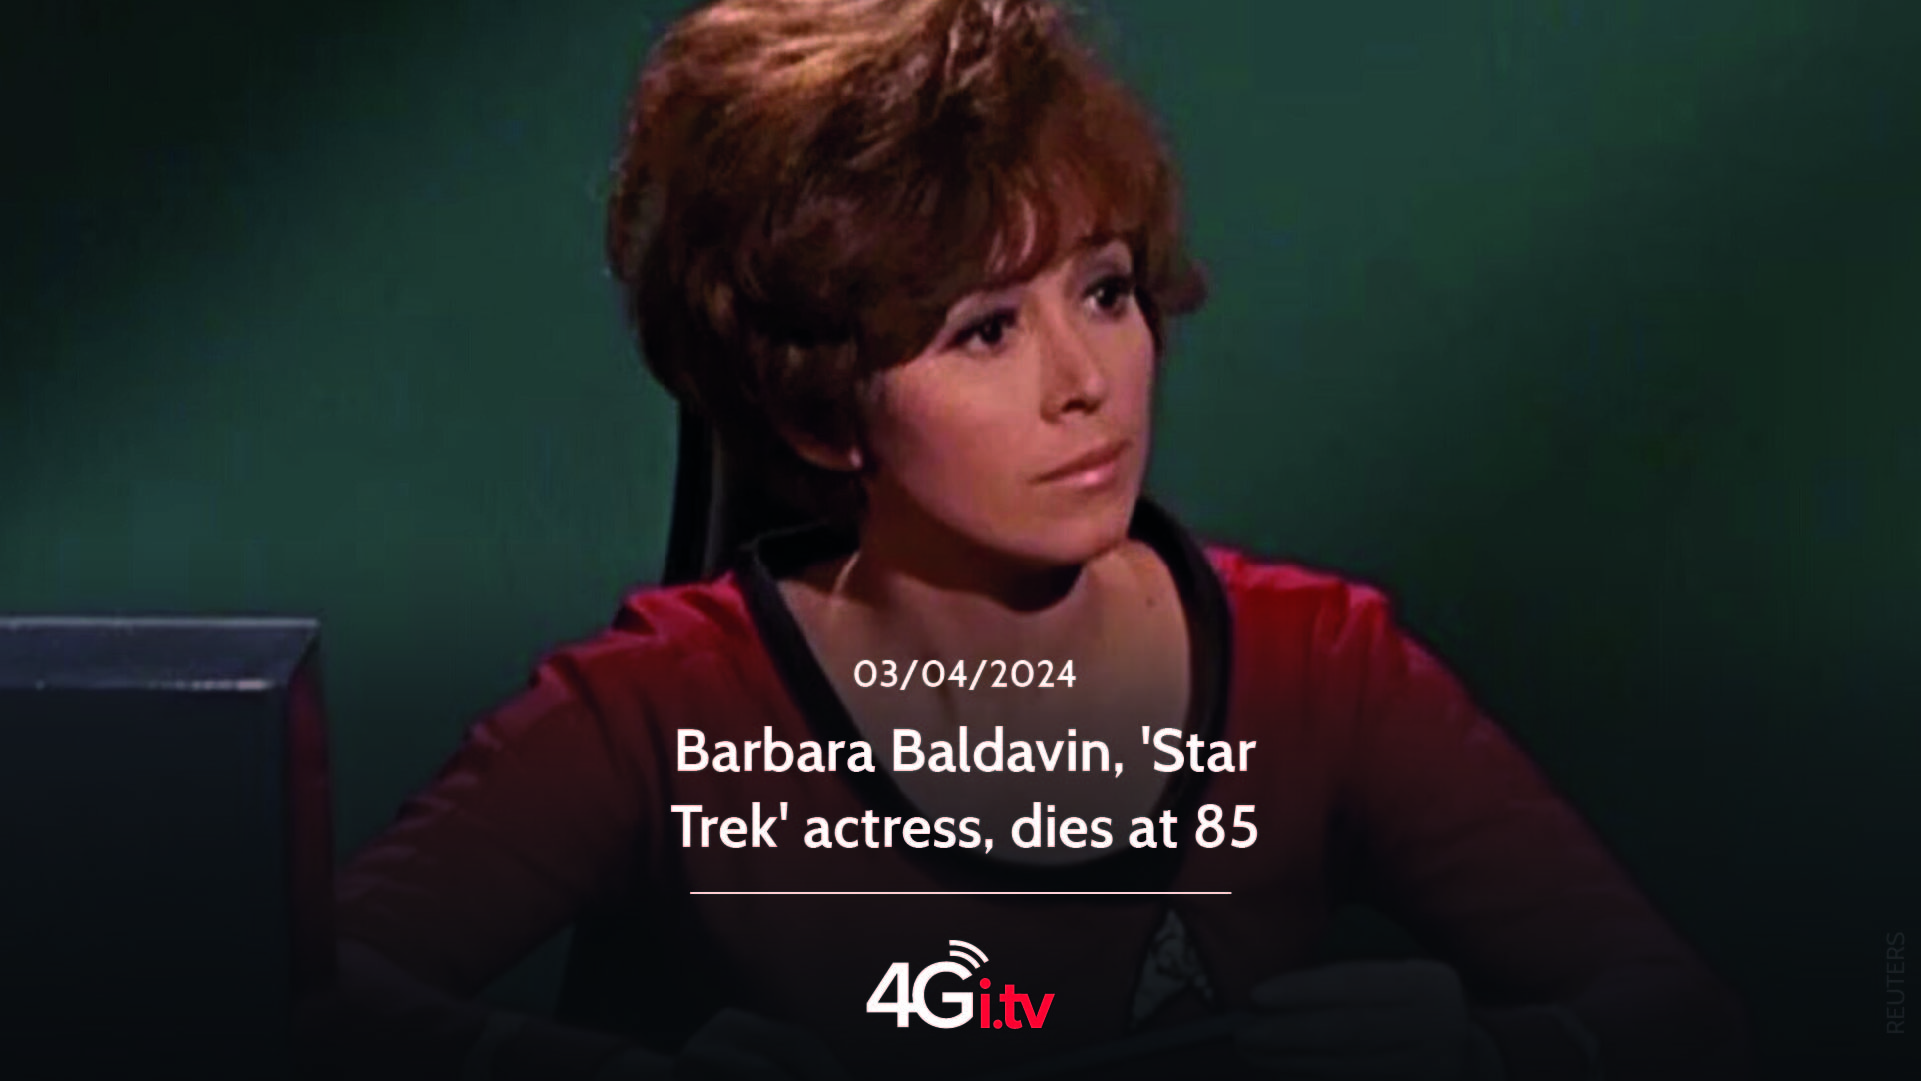 Подробнее о статье Barbara Baldavin, ‘Star Trek’ actress, dies at 85